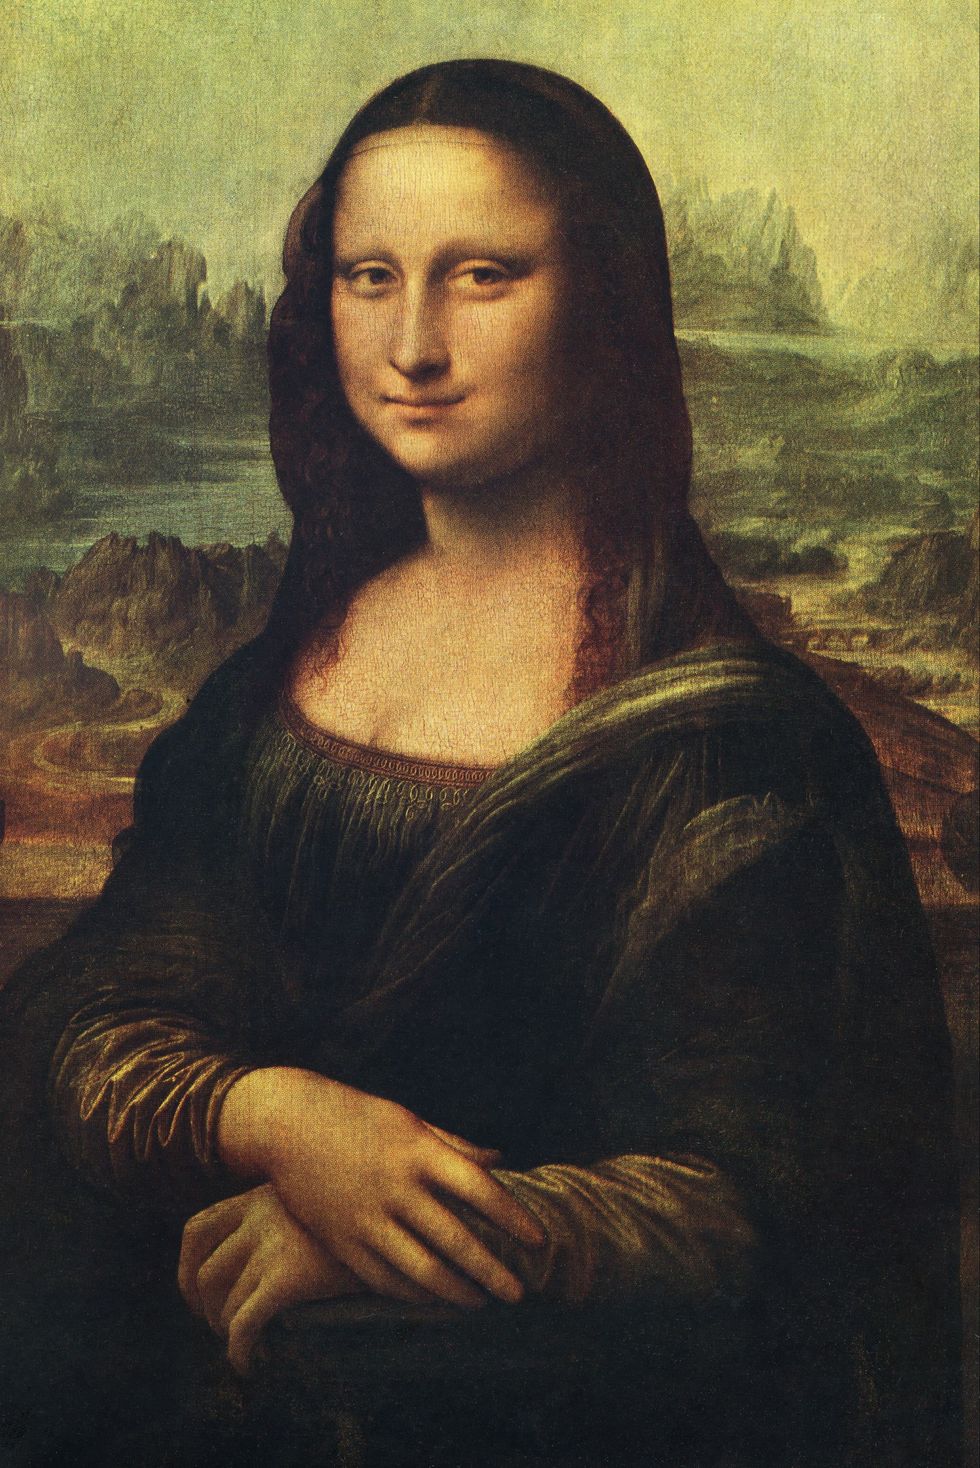 Kiệt tác "Mona Lisa" chi phối thời trang thế giới - 1